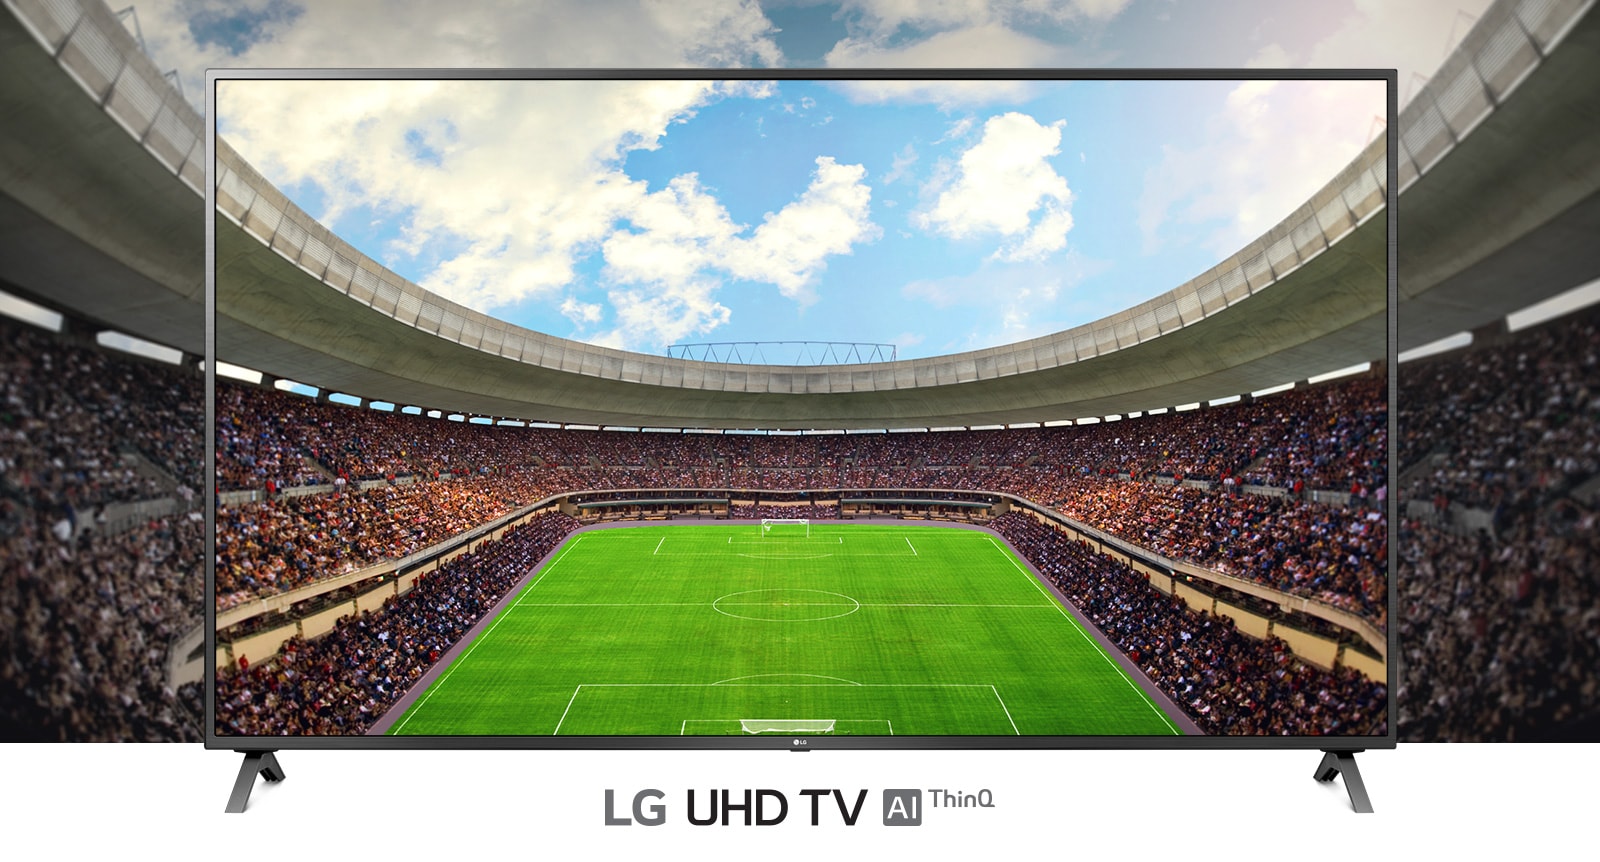 Panoramatický pohled na fotbalový stadion plný diváků uvnitř rámu televizoru.